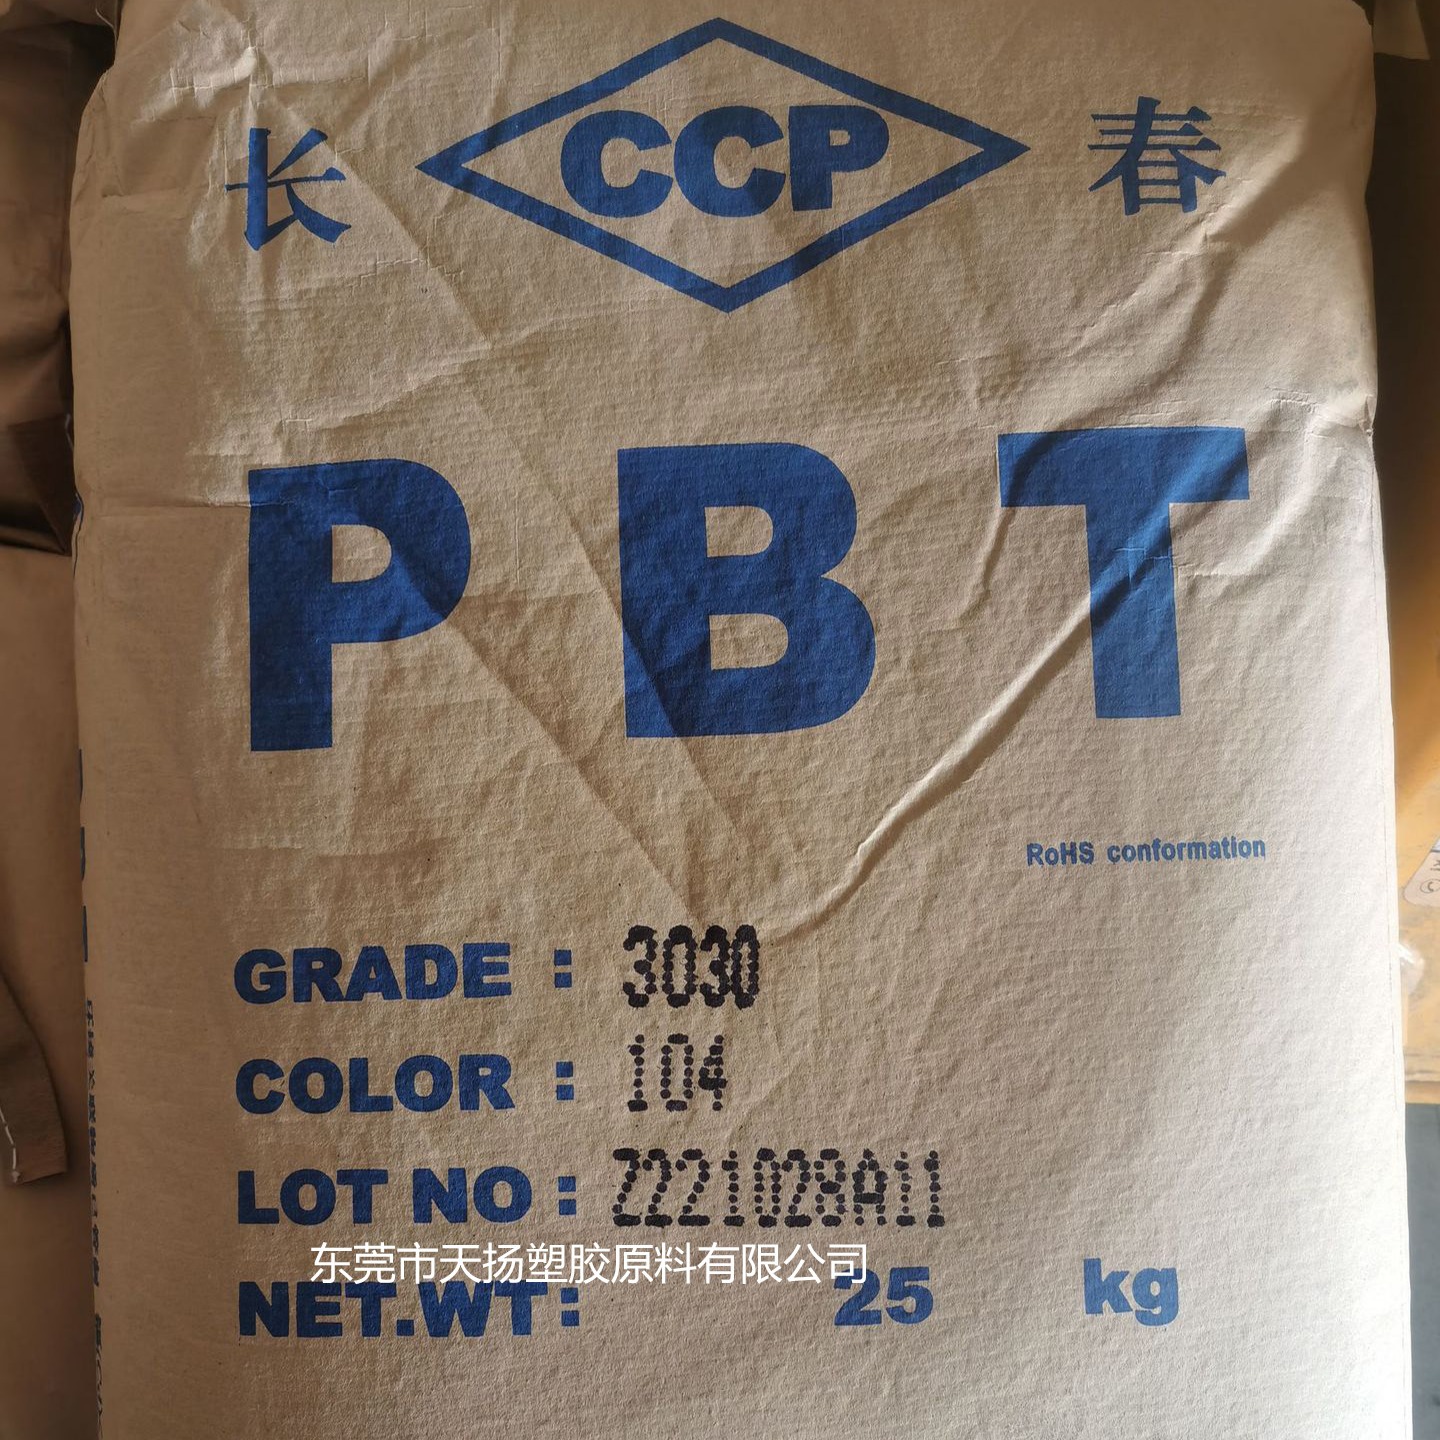 30%玻纤增强PBT台湾长春3030-104塑胶原料高耐热性